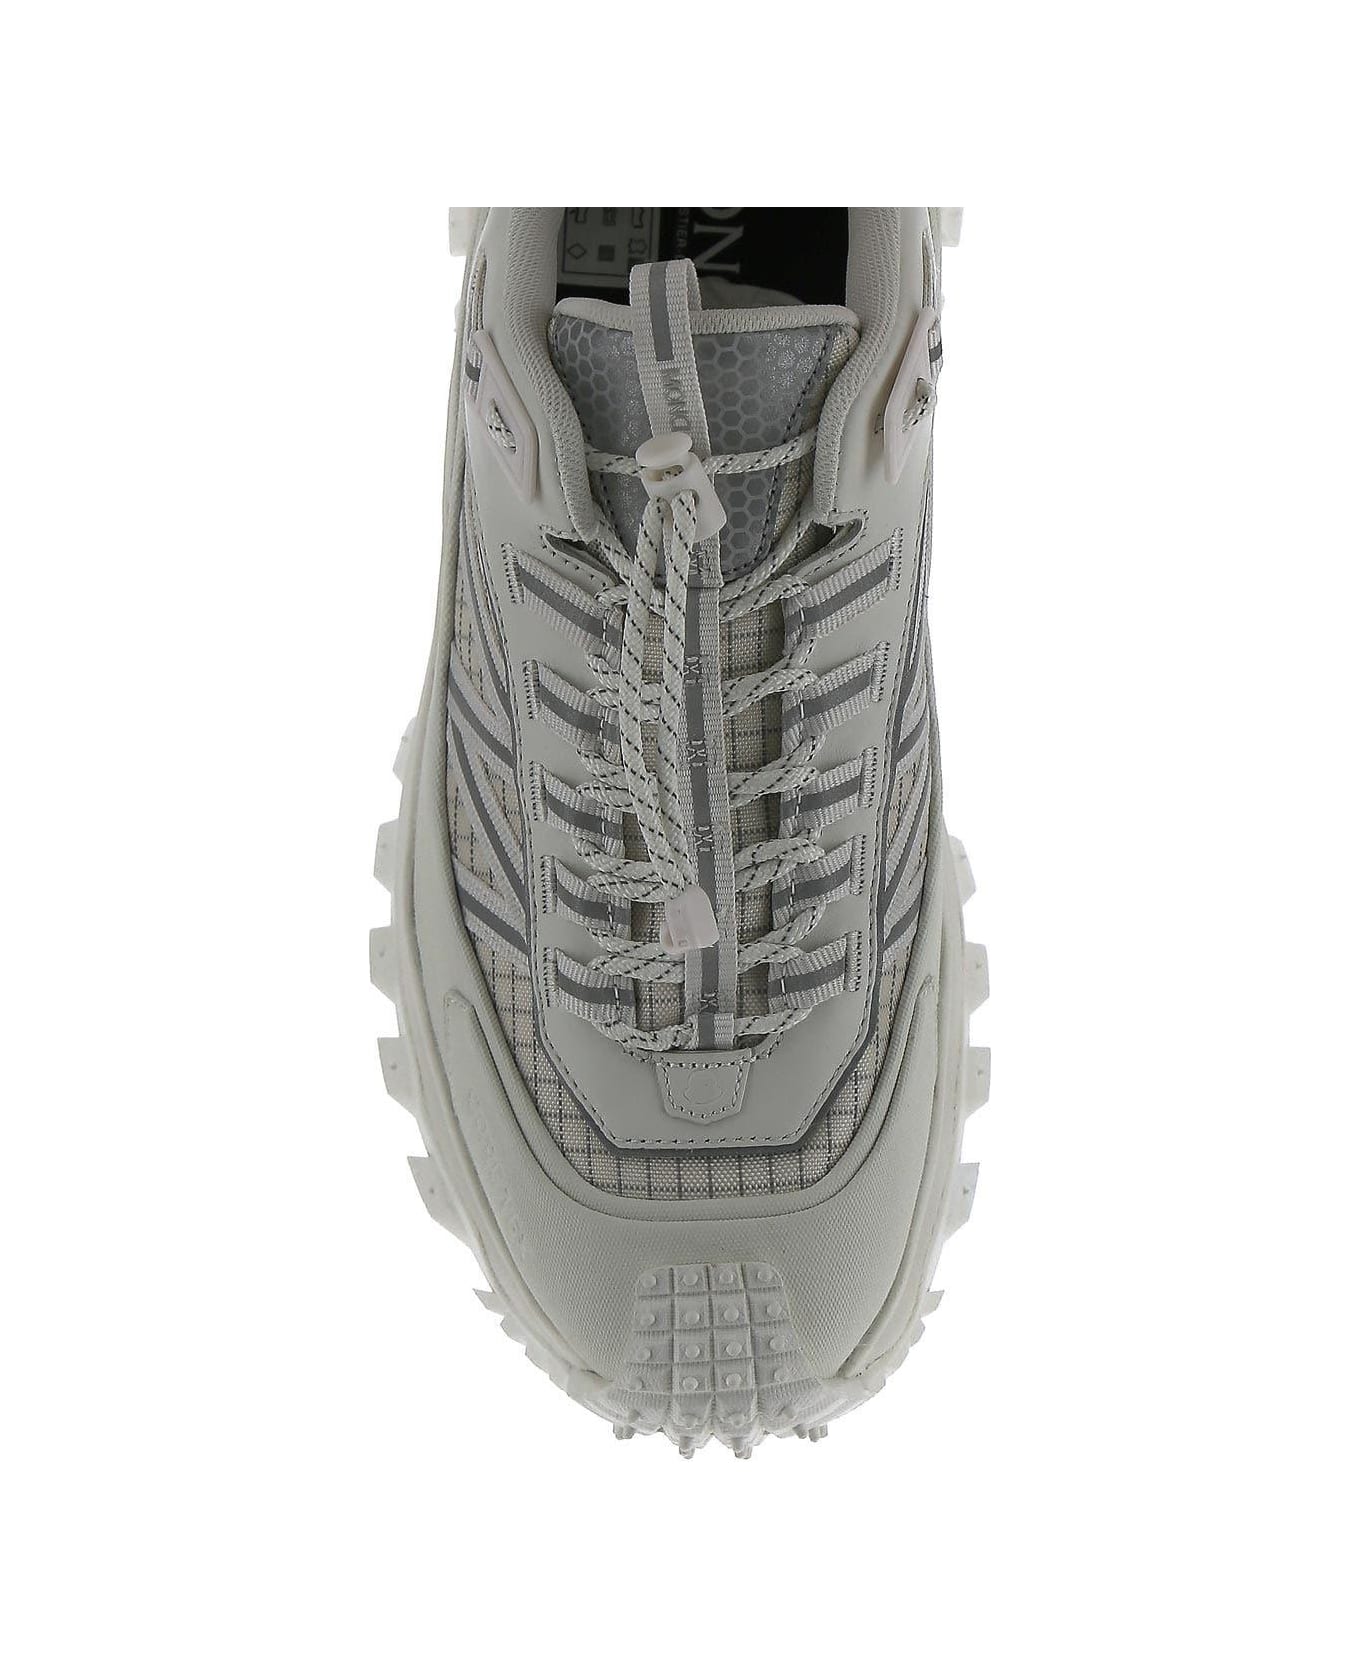 Moncler Trailgrip Gtx Sneaker - White